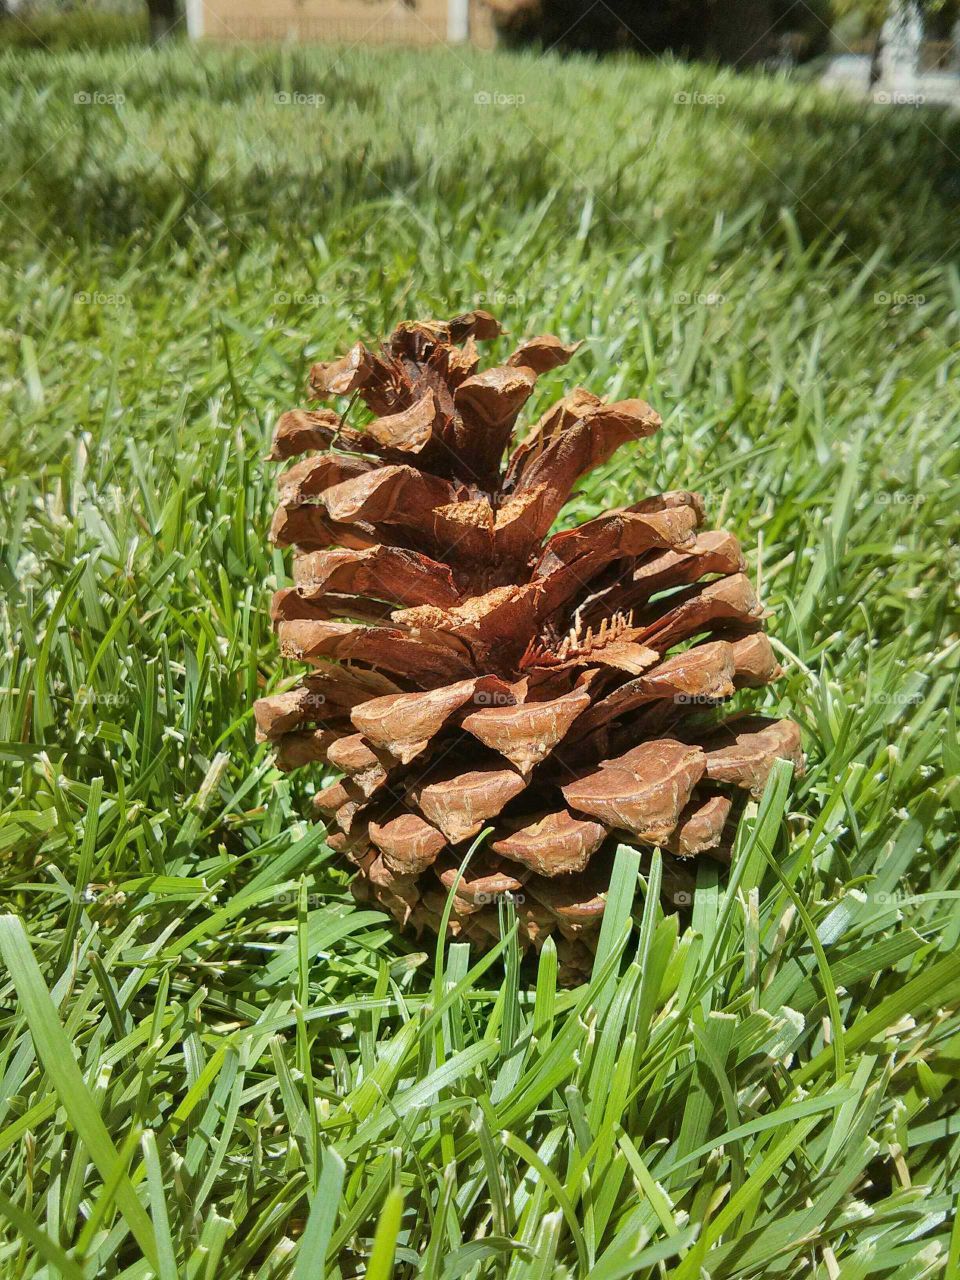 pine cone. it's a pine cone